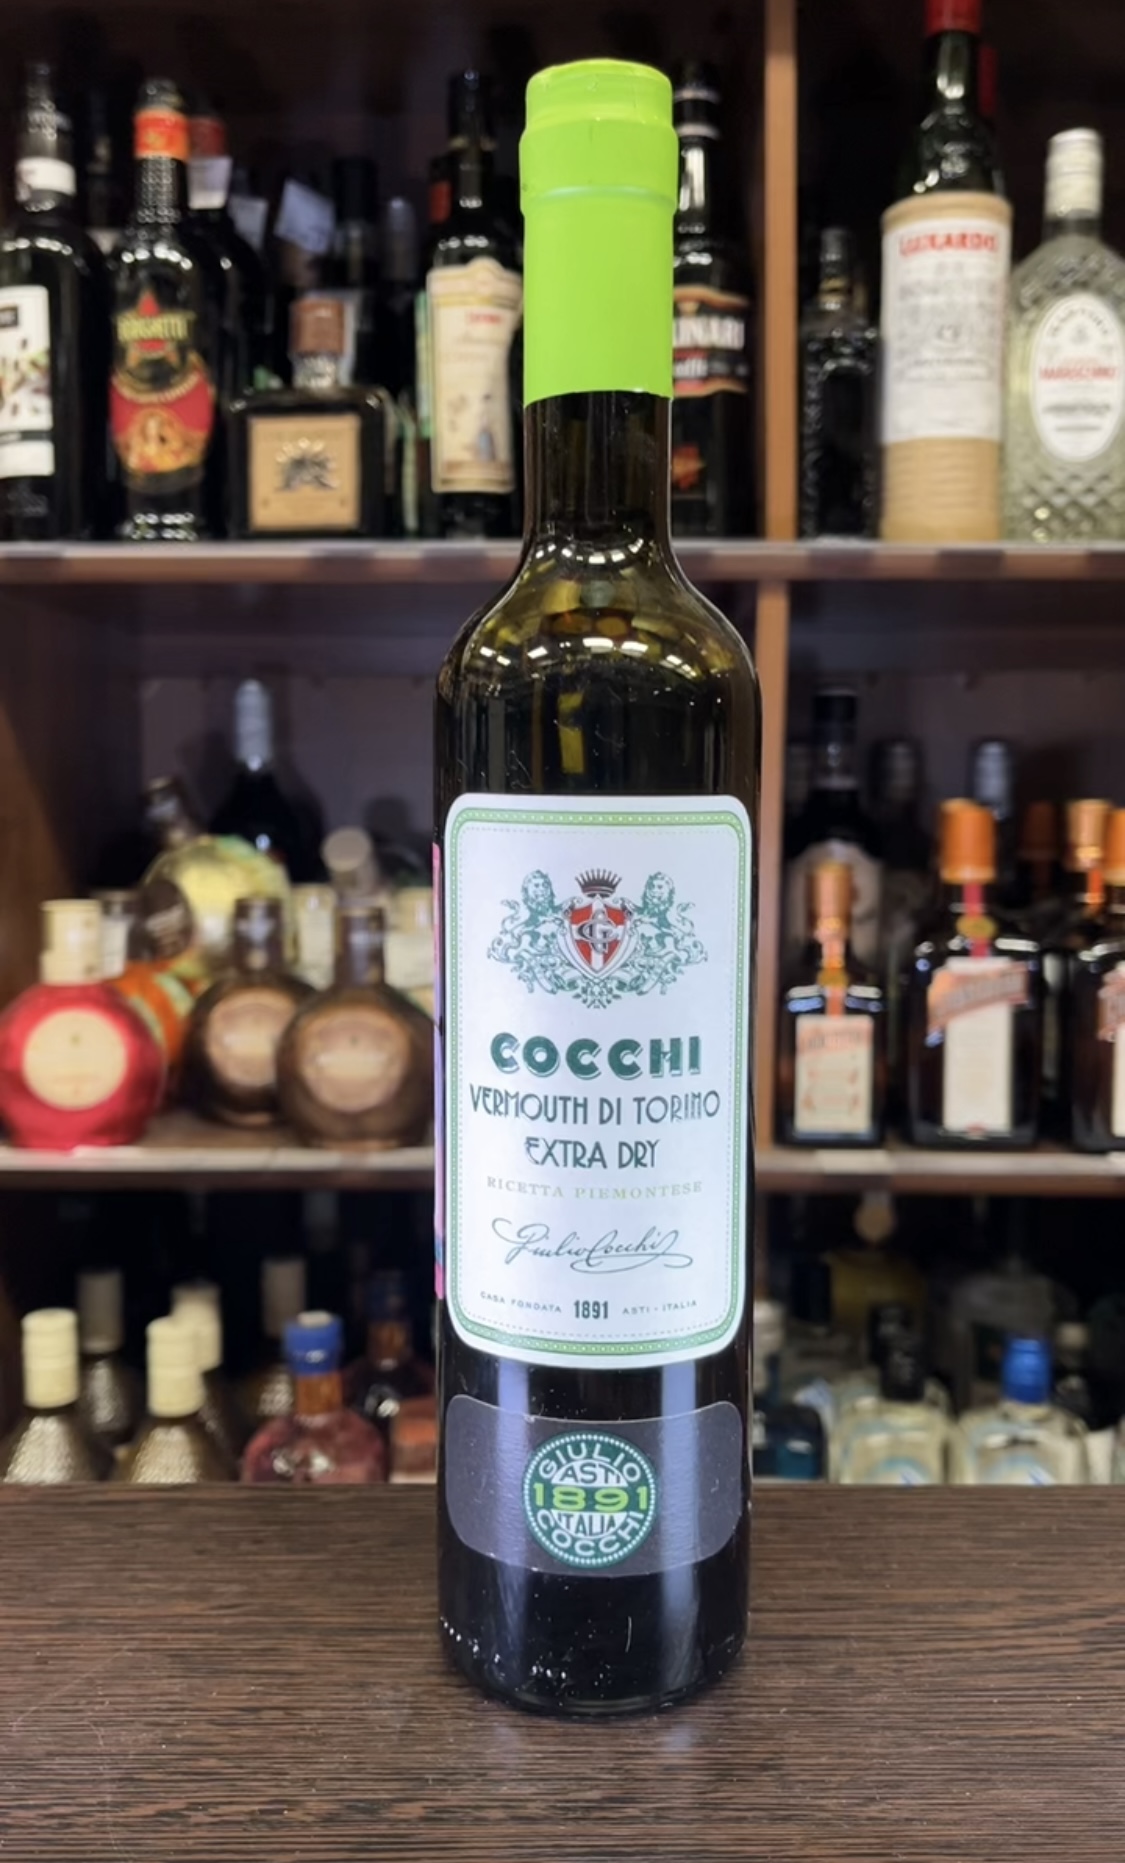 Cocchi Vermouth di Torino Dry Вермут Кокки Вермут Ди Торино Драй